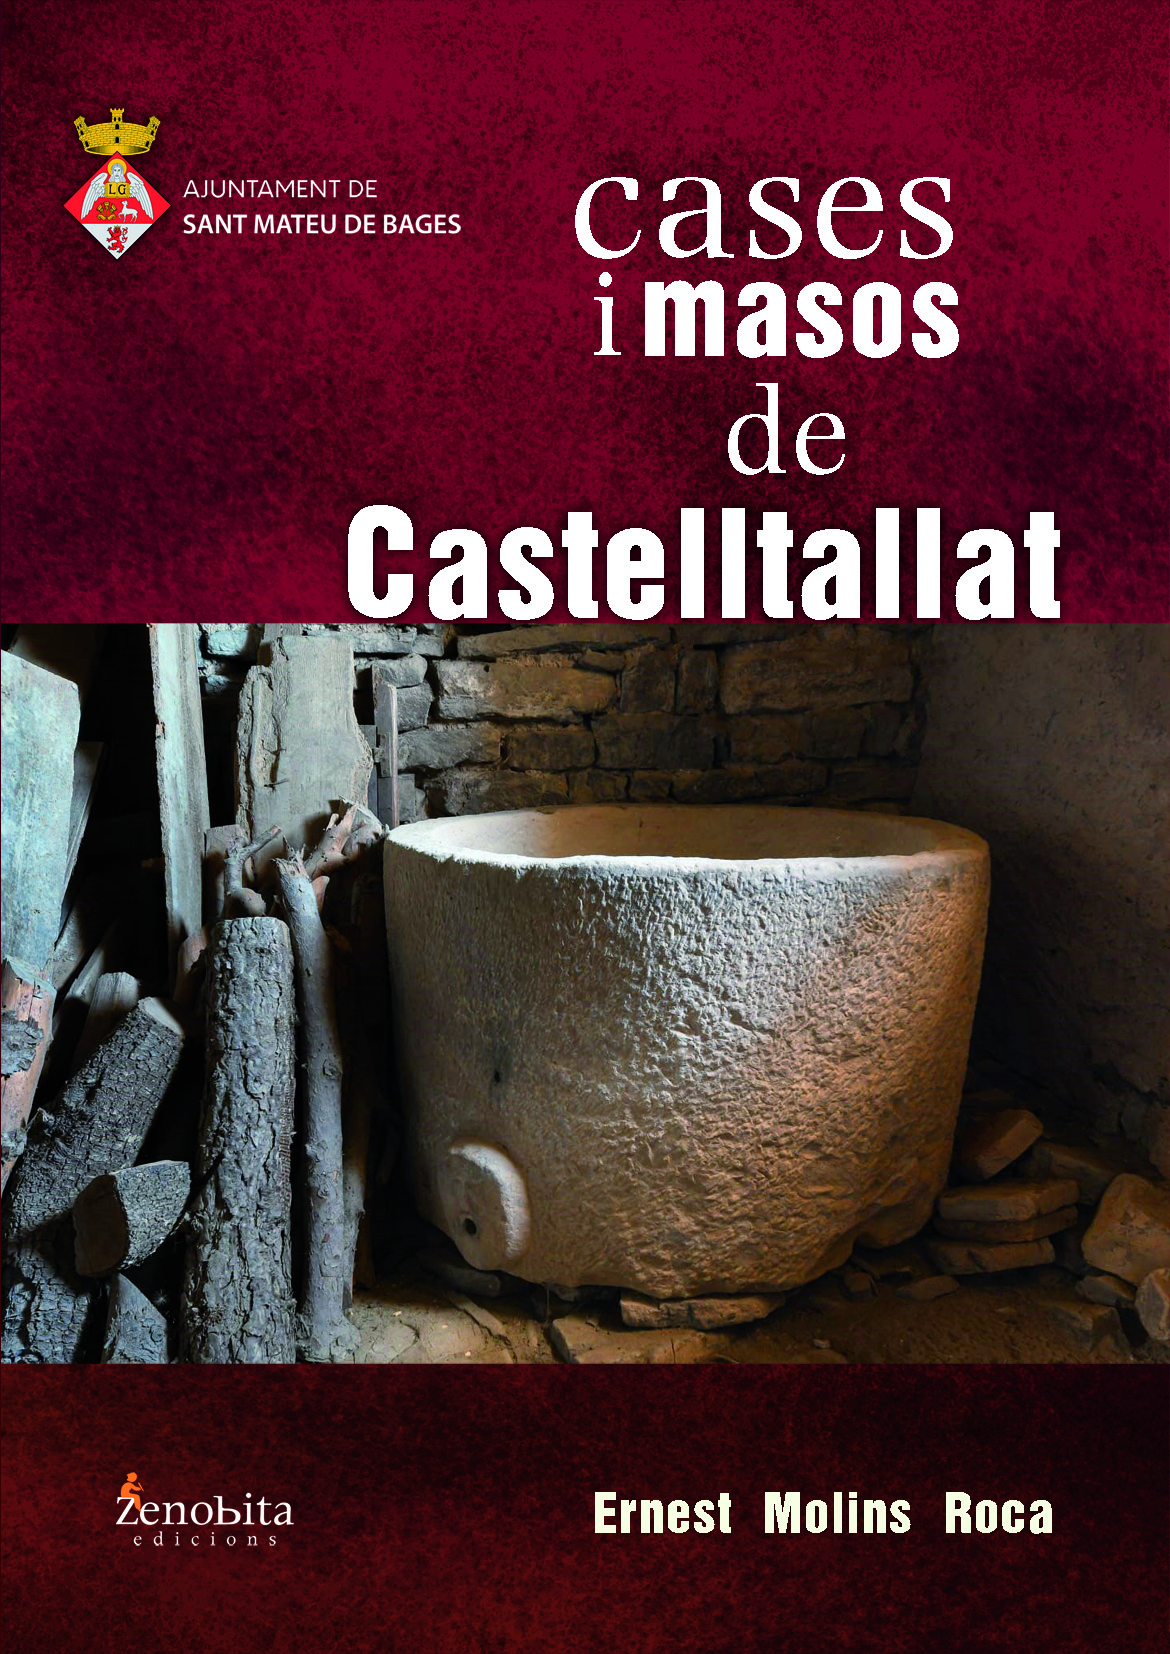 Presentació del llibre “Cases i masos de Castelltallat” a l’església de Castelltallat